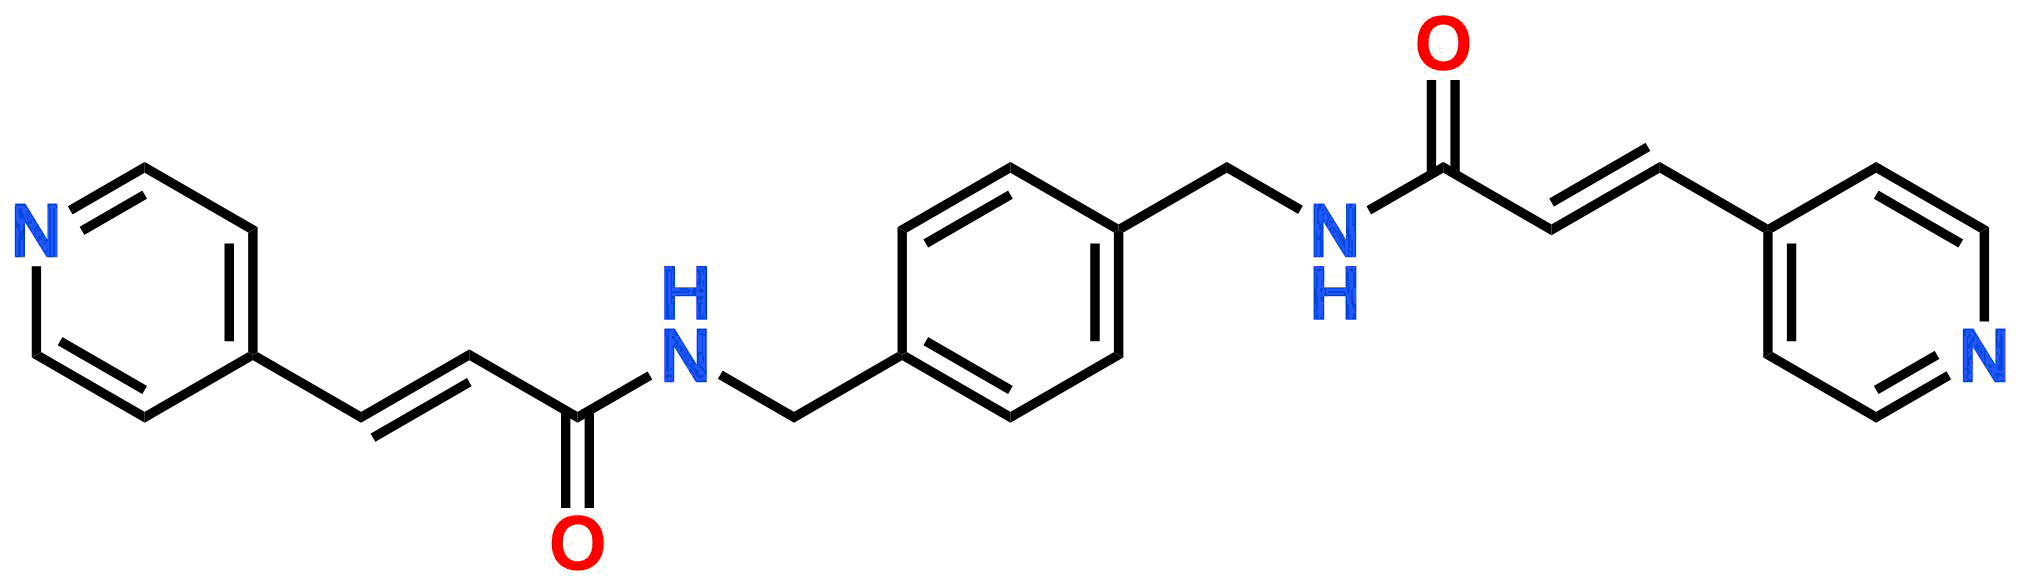 (2E,2'E)-N,N'-(1,4-phenylenebis(methylene))bis(3-(pyridin-4-yl)acrylamide)